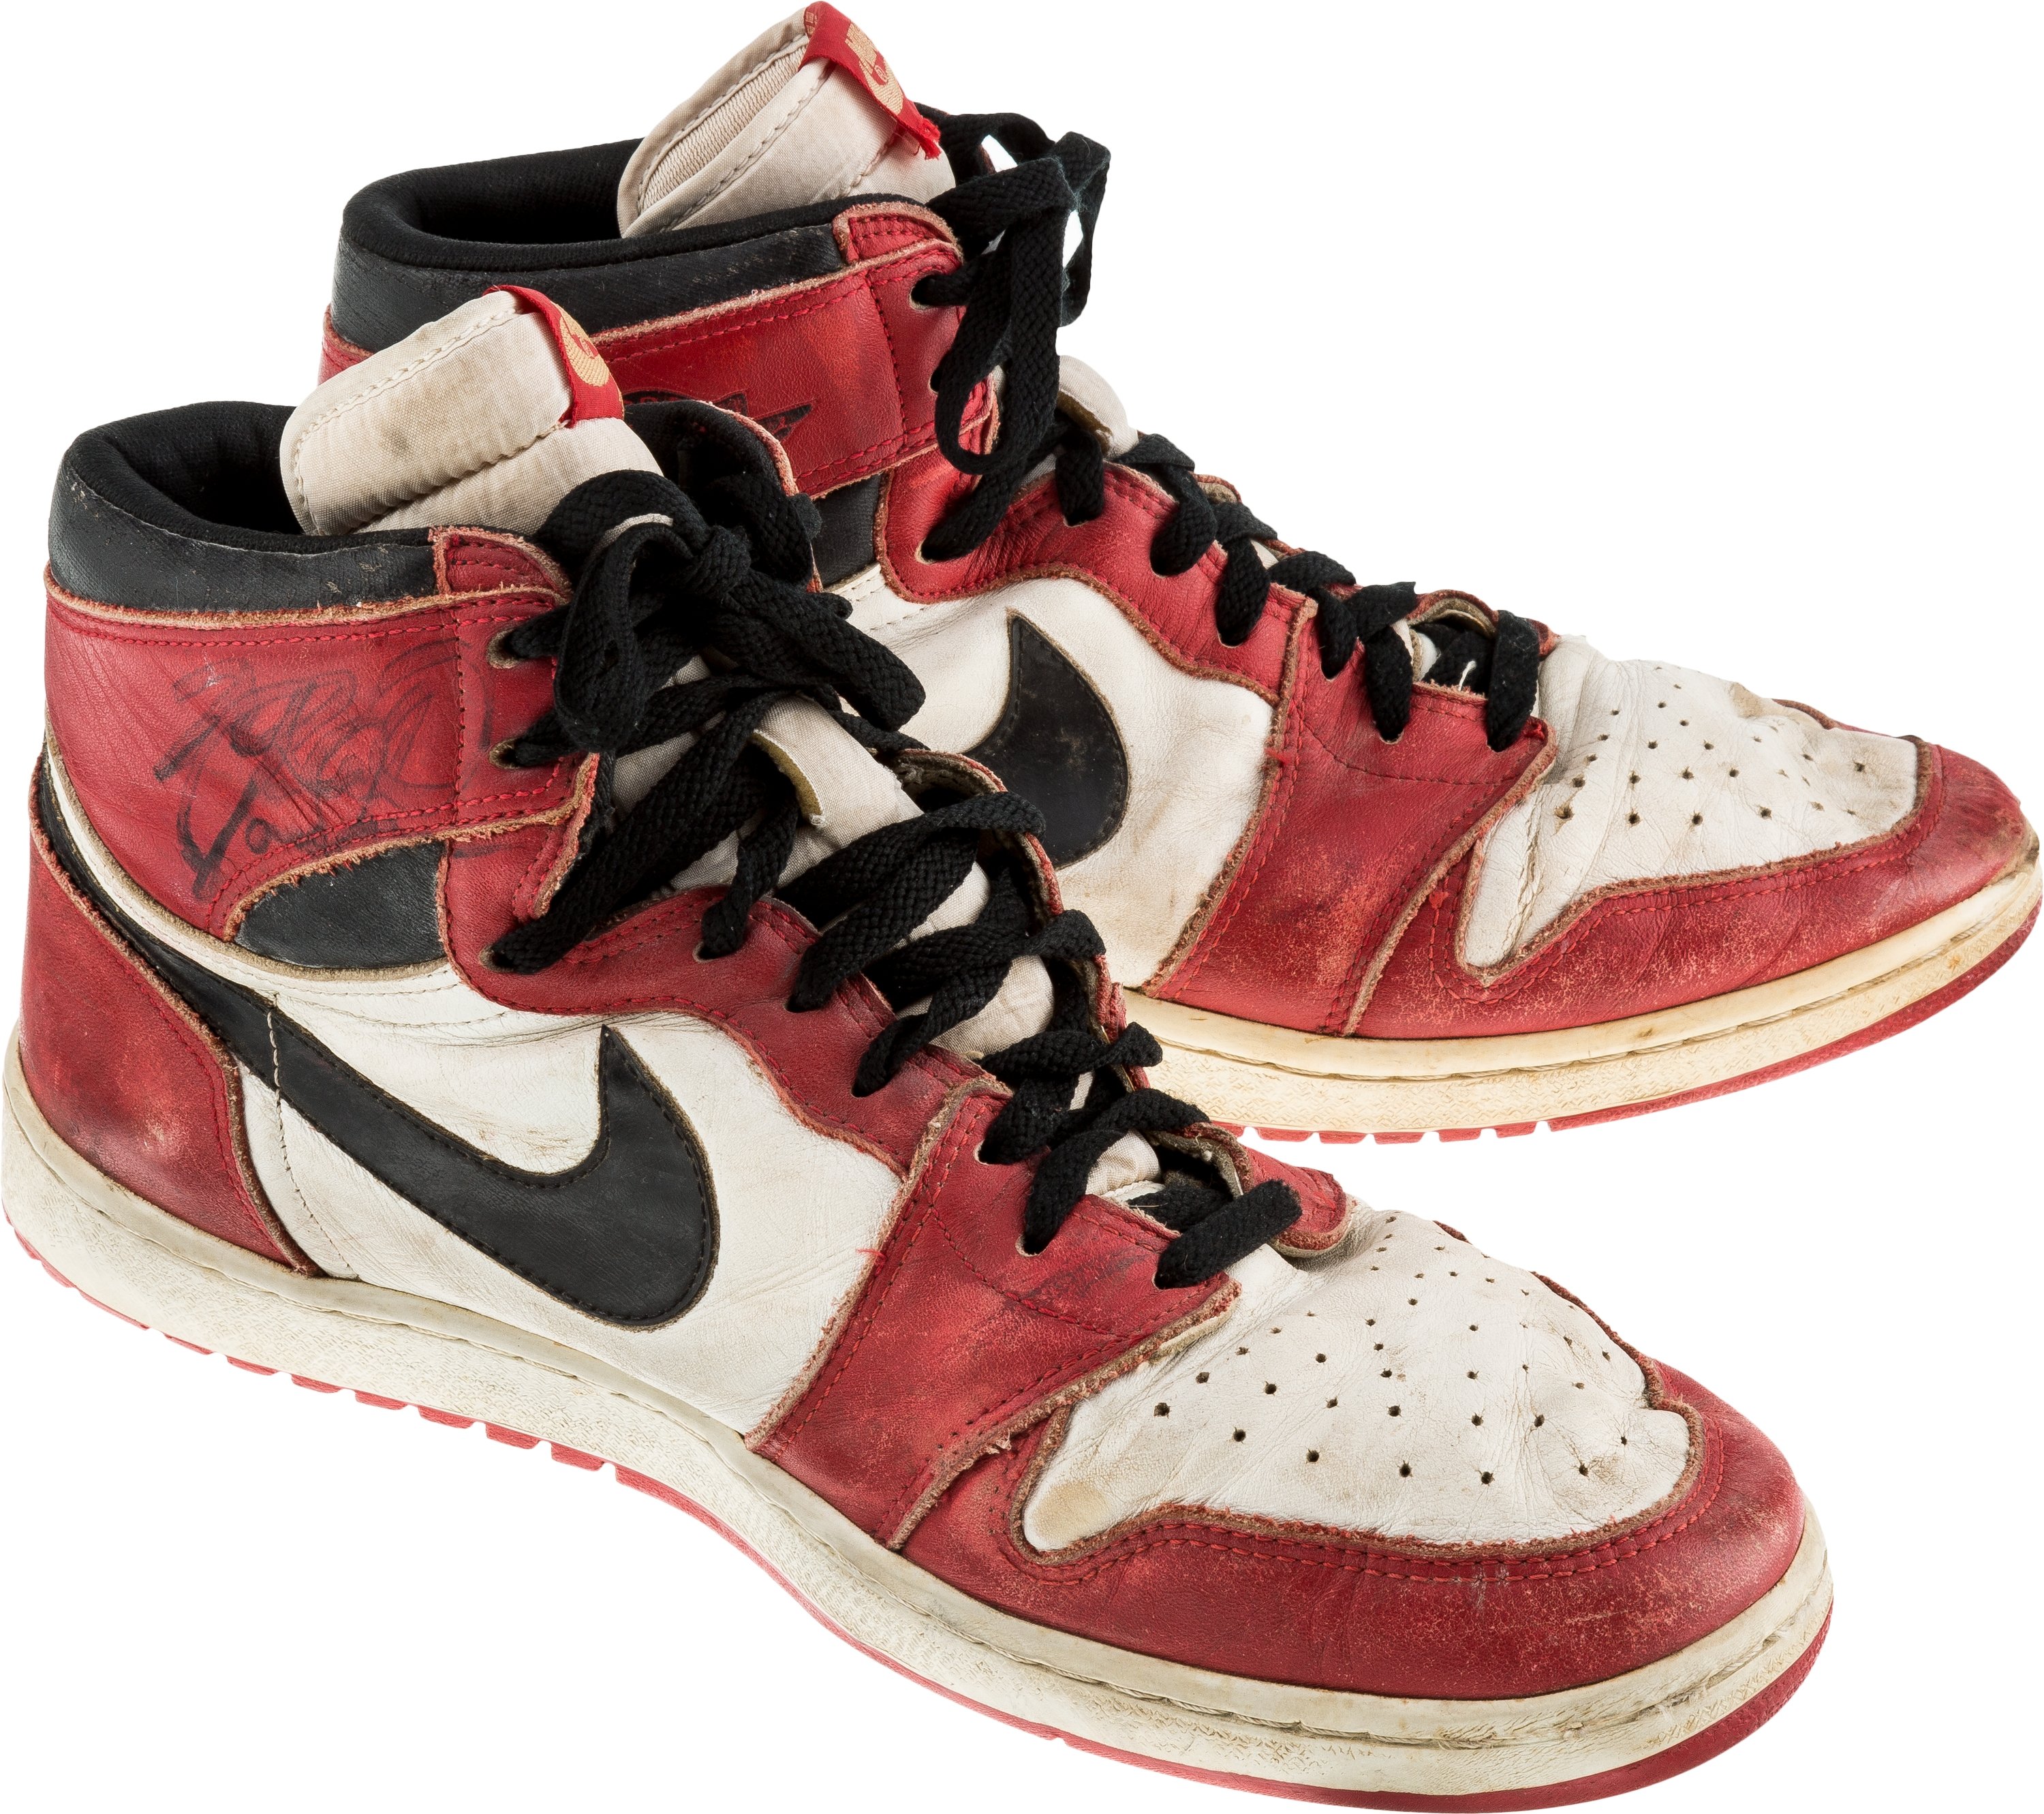 Джорданы 1 оригинал. Nike Air Jordan 1. Nike Air Jordan 1 1985. Air Jordan 1 1985. Nike Air Jordan 1 Original.